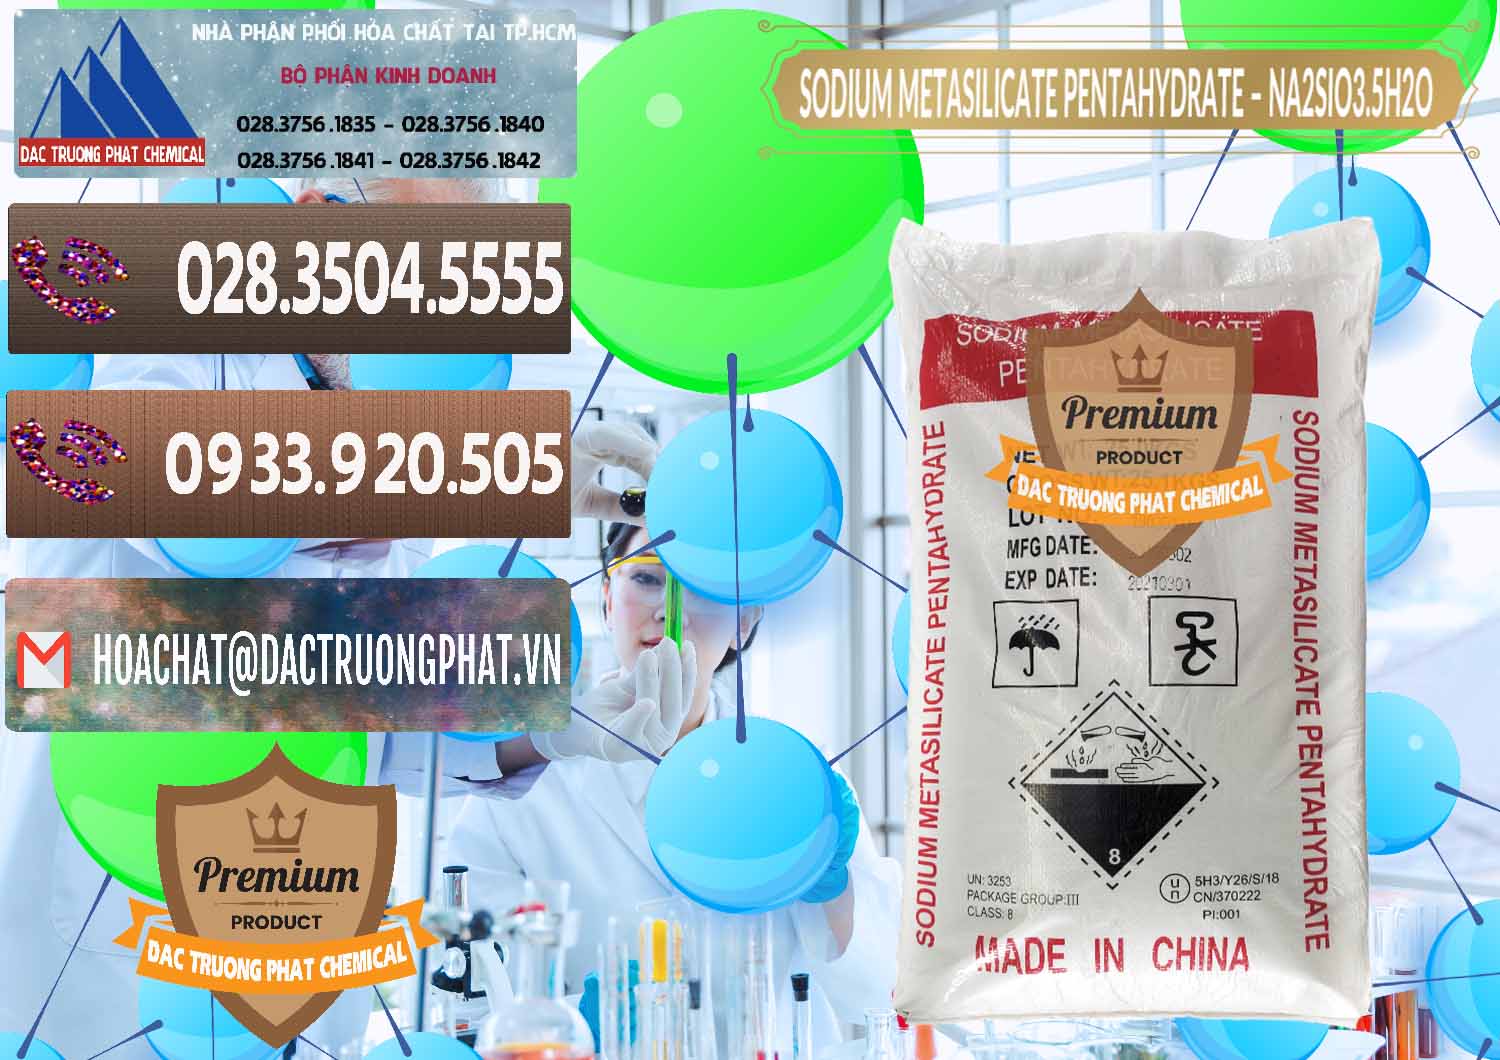 Cty bán và phân phối Sodium Metasilicate Pentahydrate – Silicate Bột Trung Quốc China - 0147 - Công ty phân phối và cung cấp hóa chất tại TP.HCM - hoachatviet.net